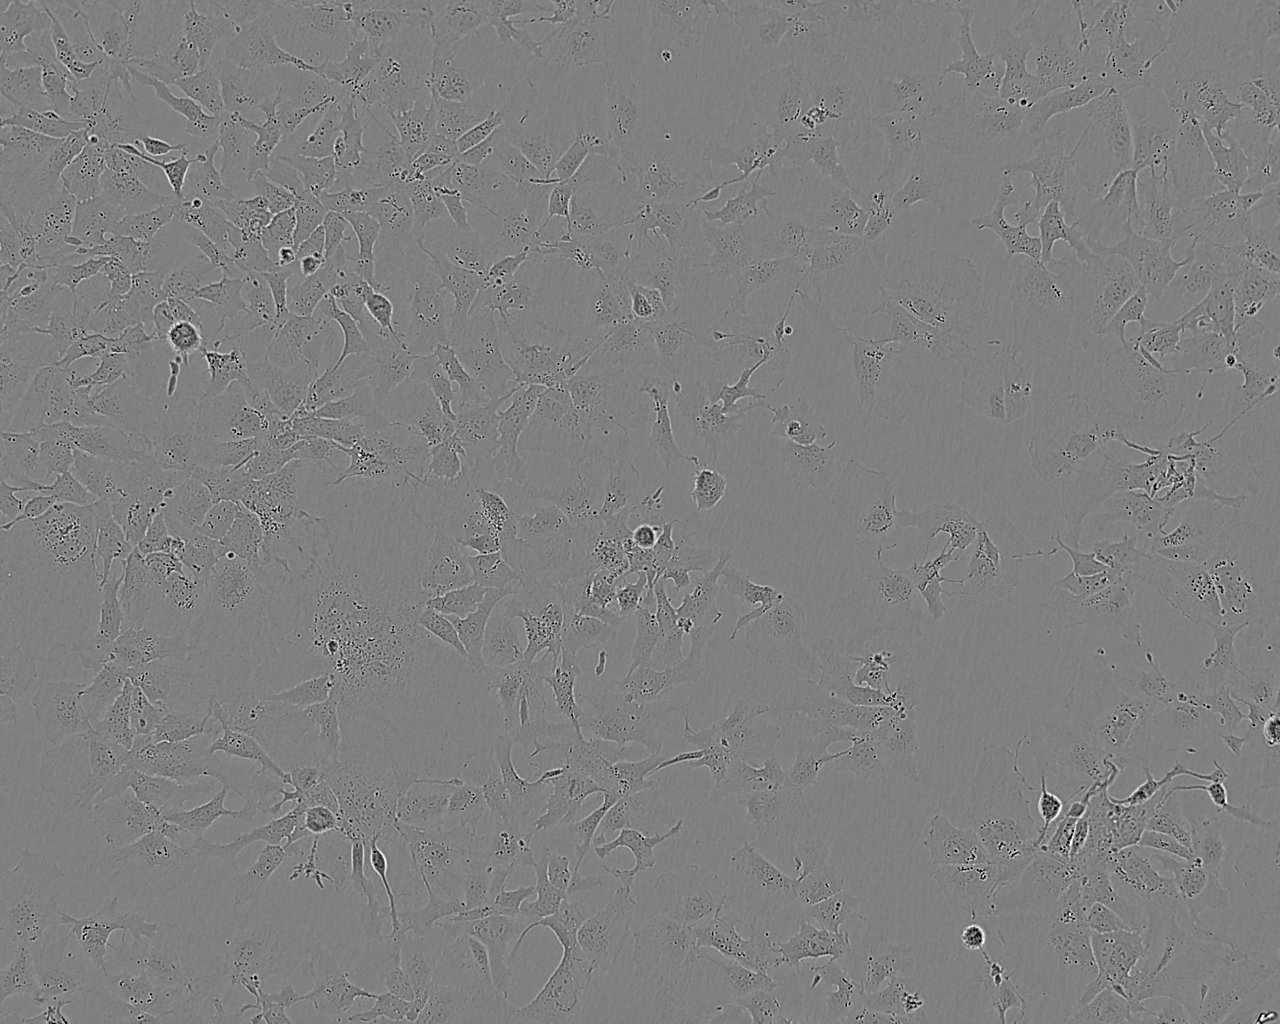 NCI-H838 Fresh Cells|人肺癌细胞(送STR基因图谱)